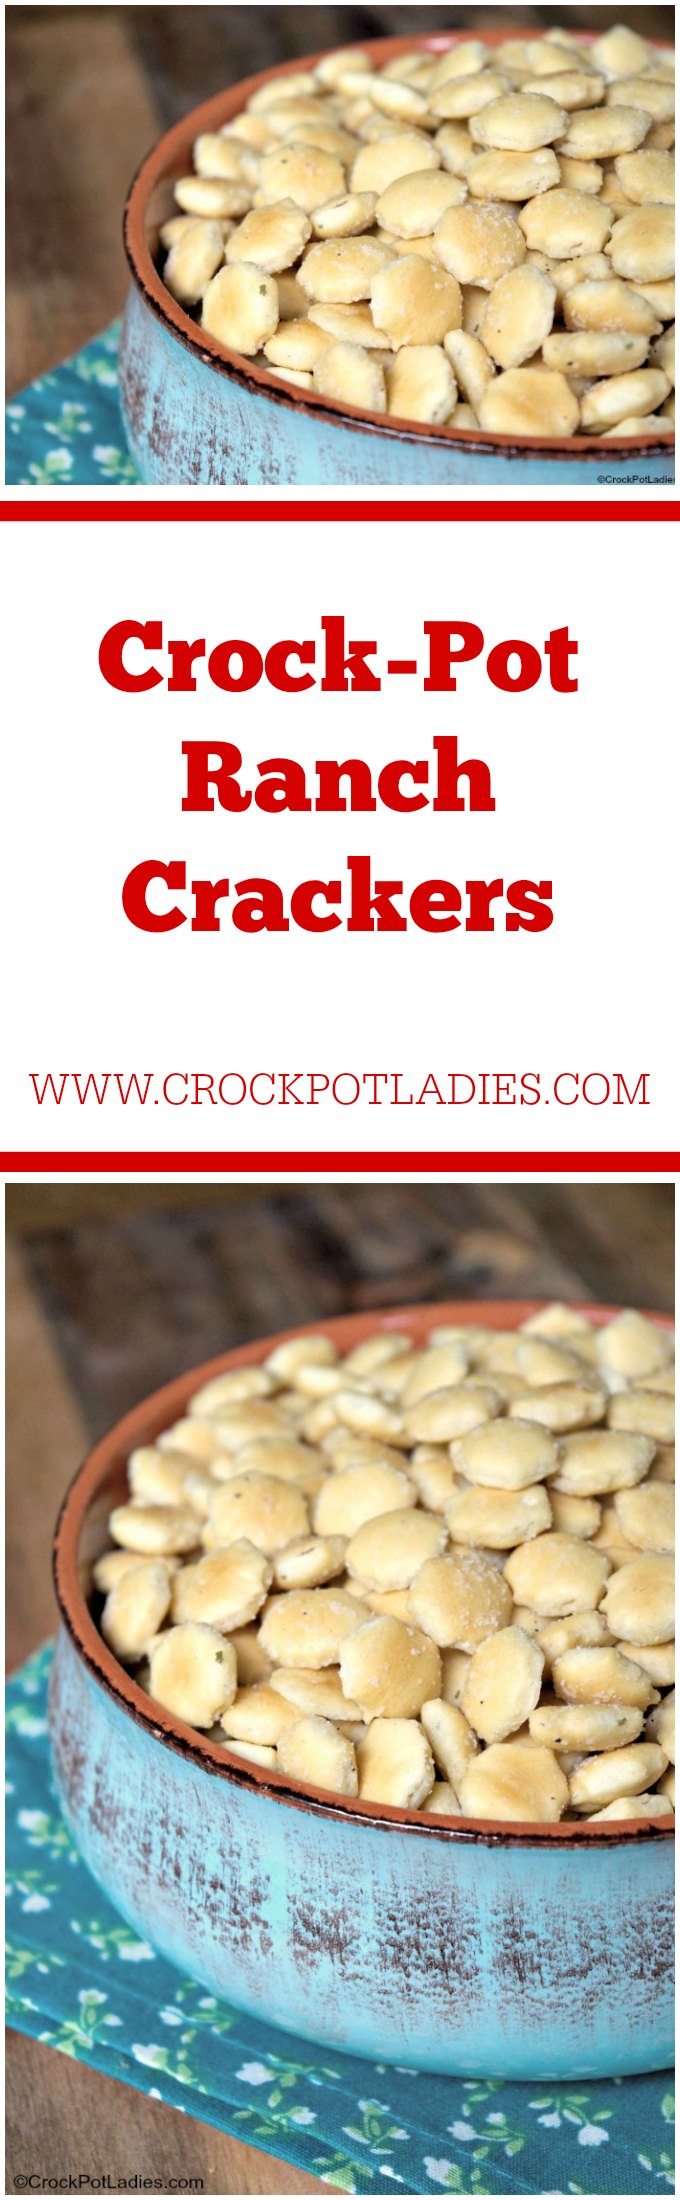 Crock-Pot Ranch Crackers